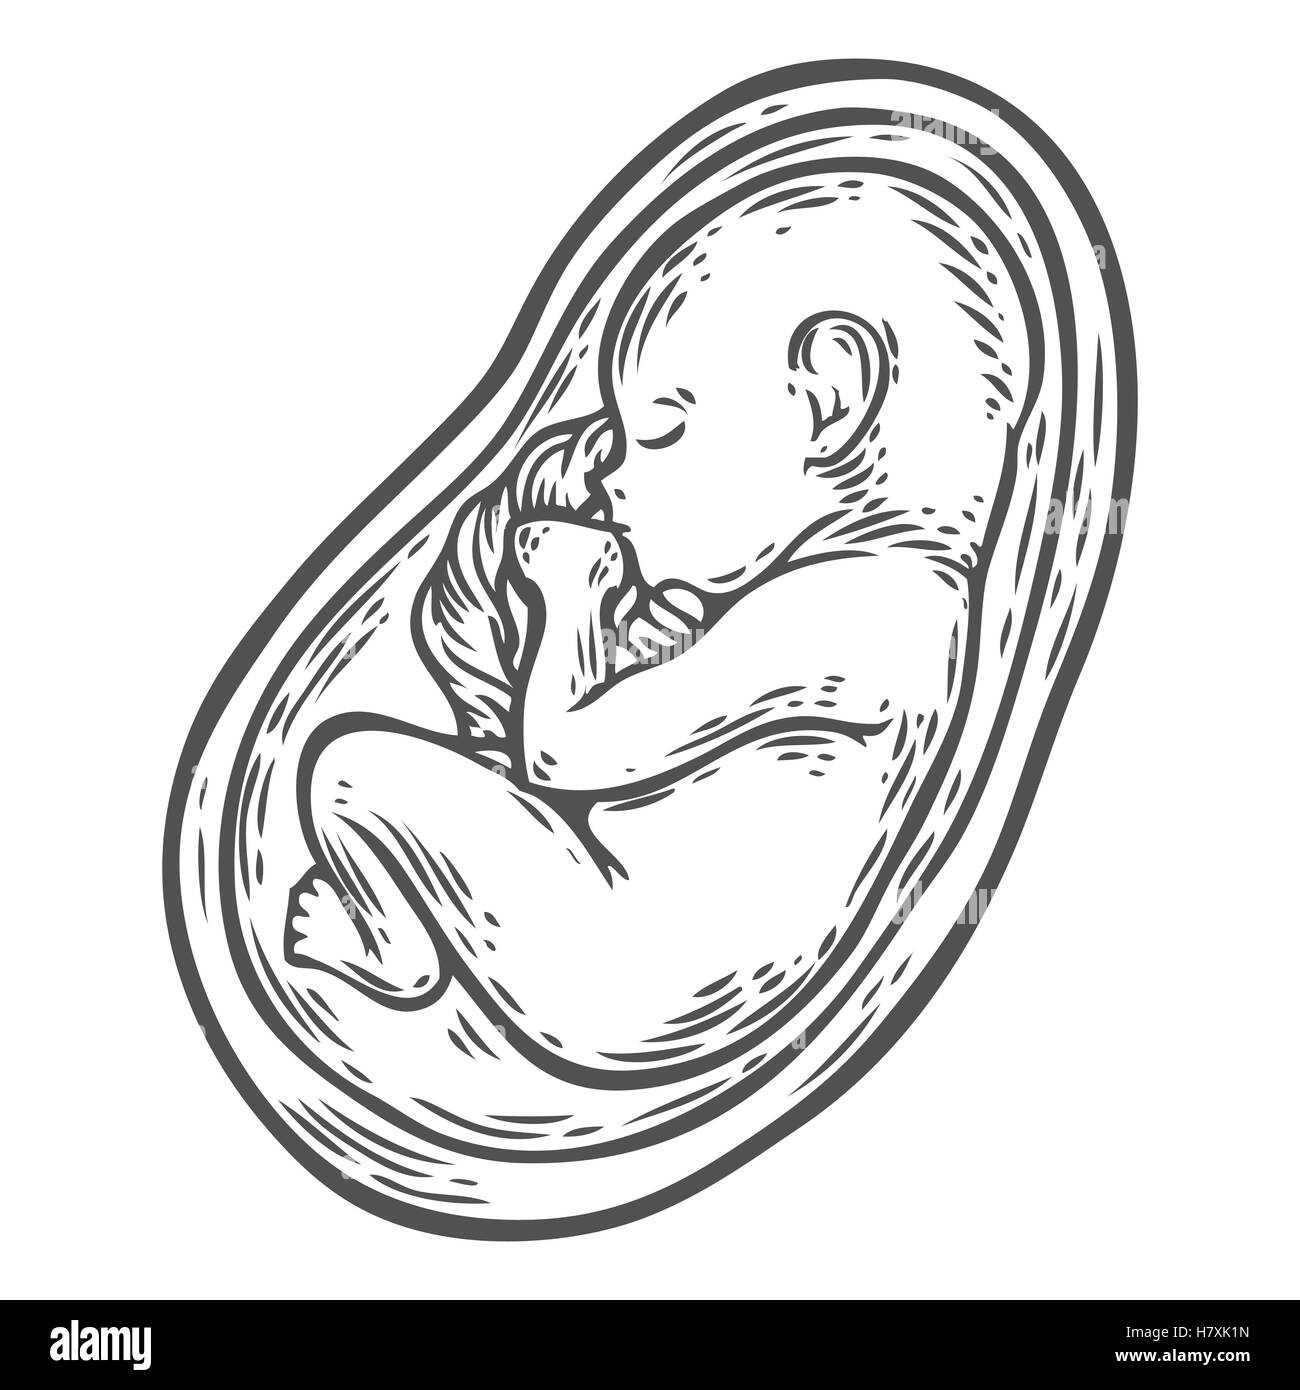 Foetus humain concept hand drawn vector illustration bébé en croissance prénatale, umbilicle épinière isolé sur un fond blanc comme un ob Illustration de Vecteur